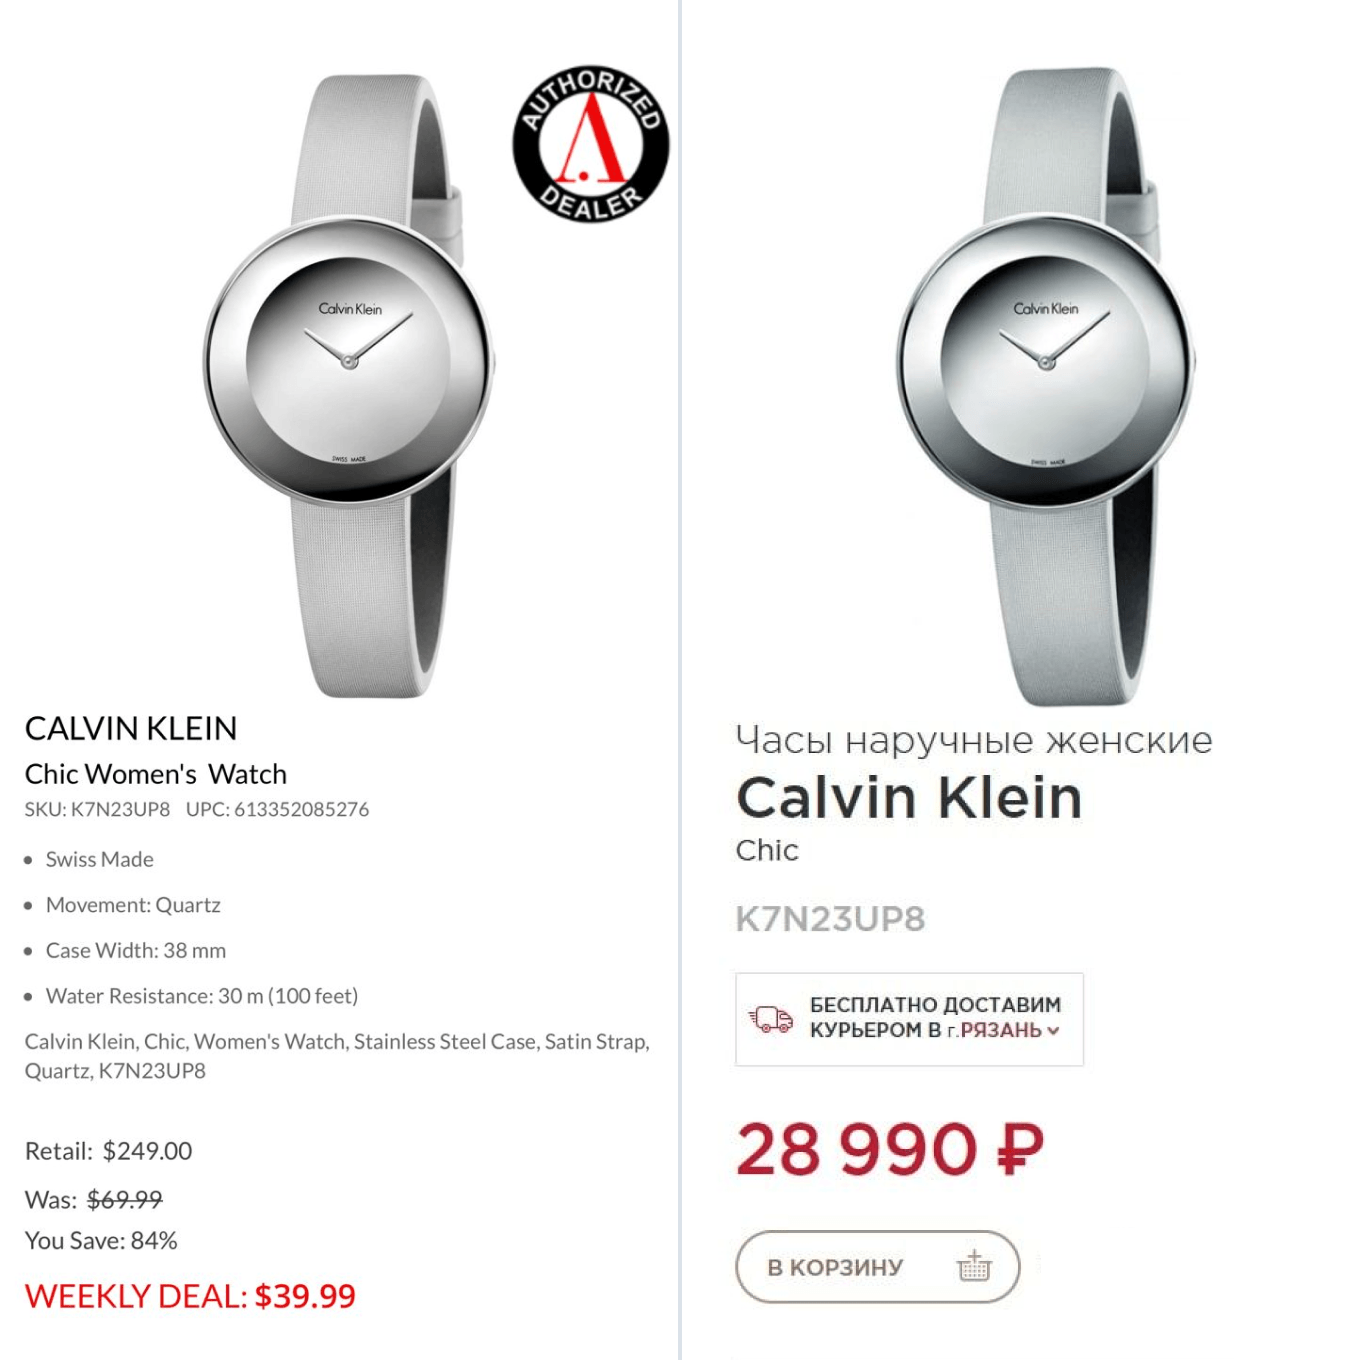 Сравнение цен на часы Calvin Klein в России и за рубежом